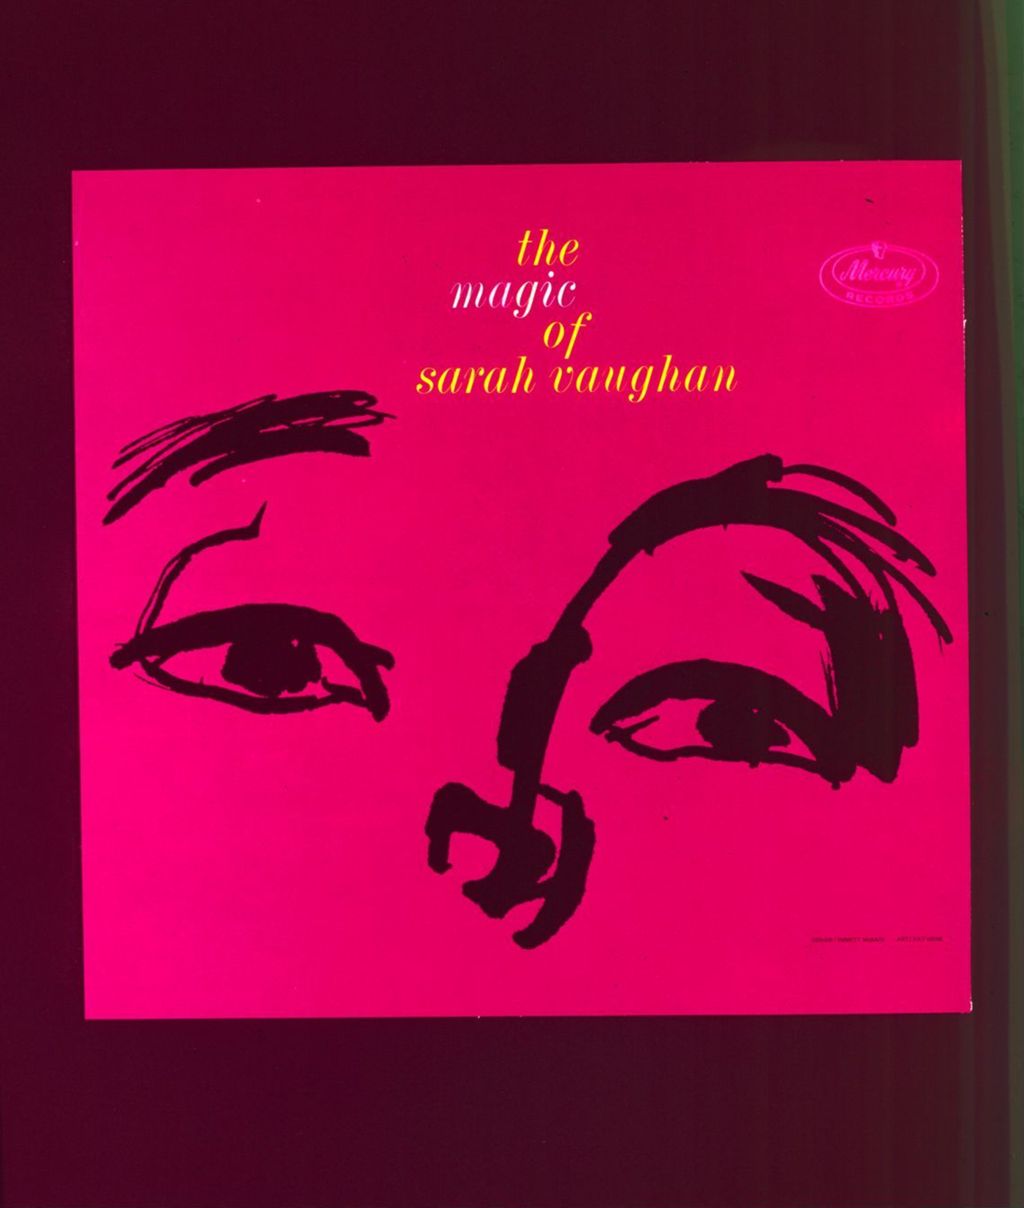 The magic of Sarah Vaughan, album cover